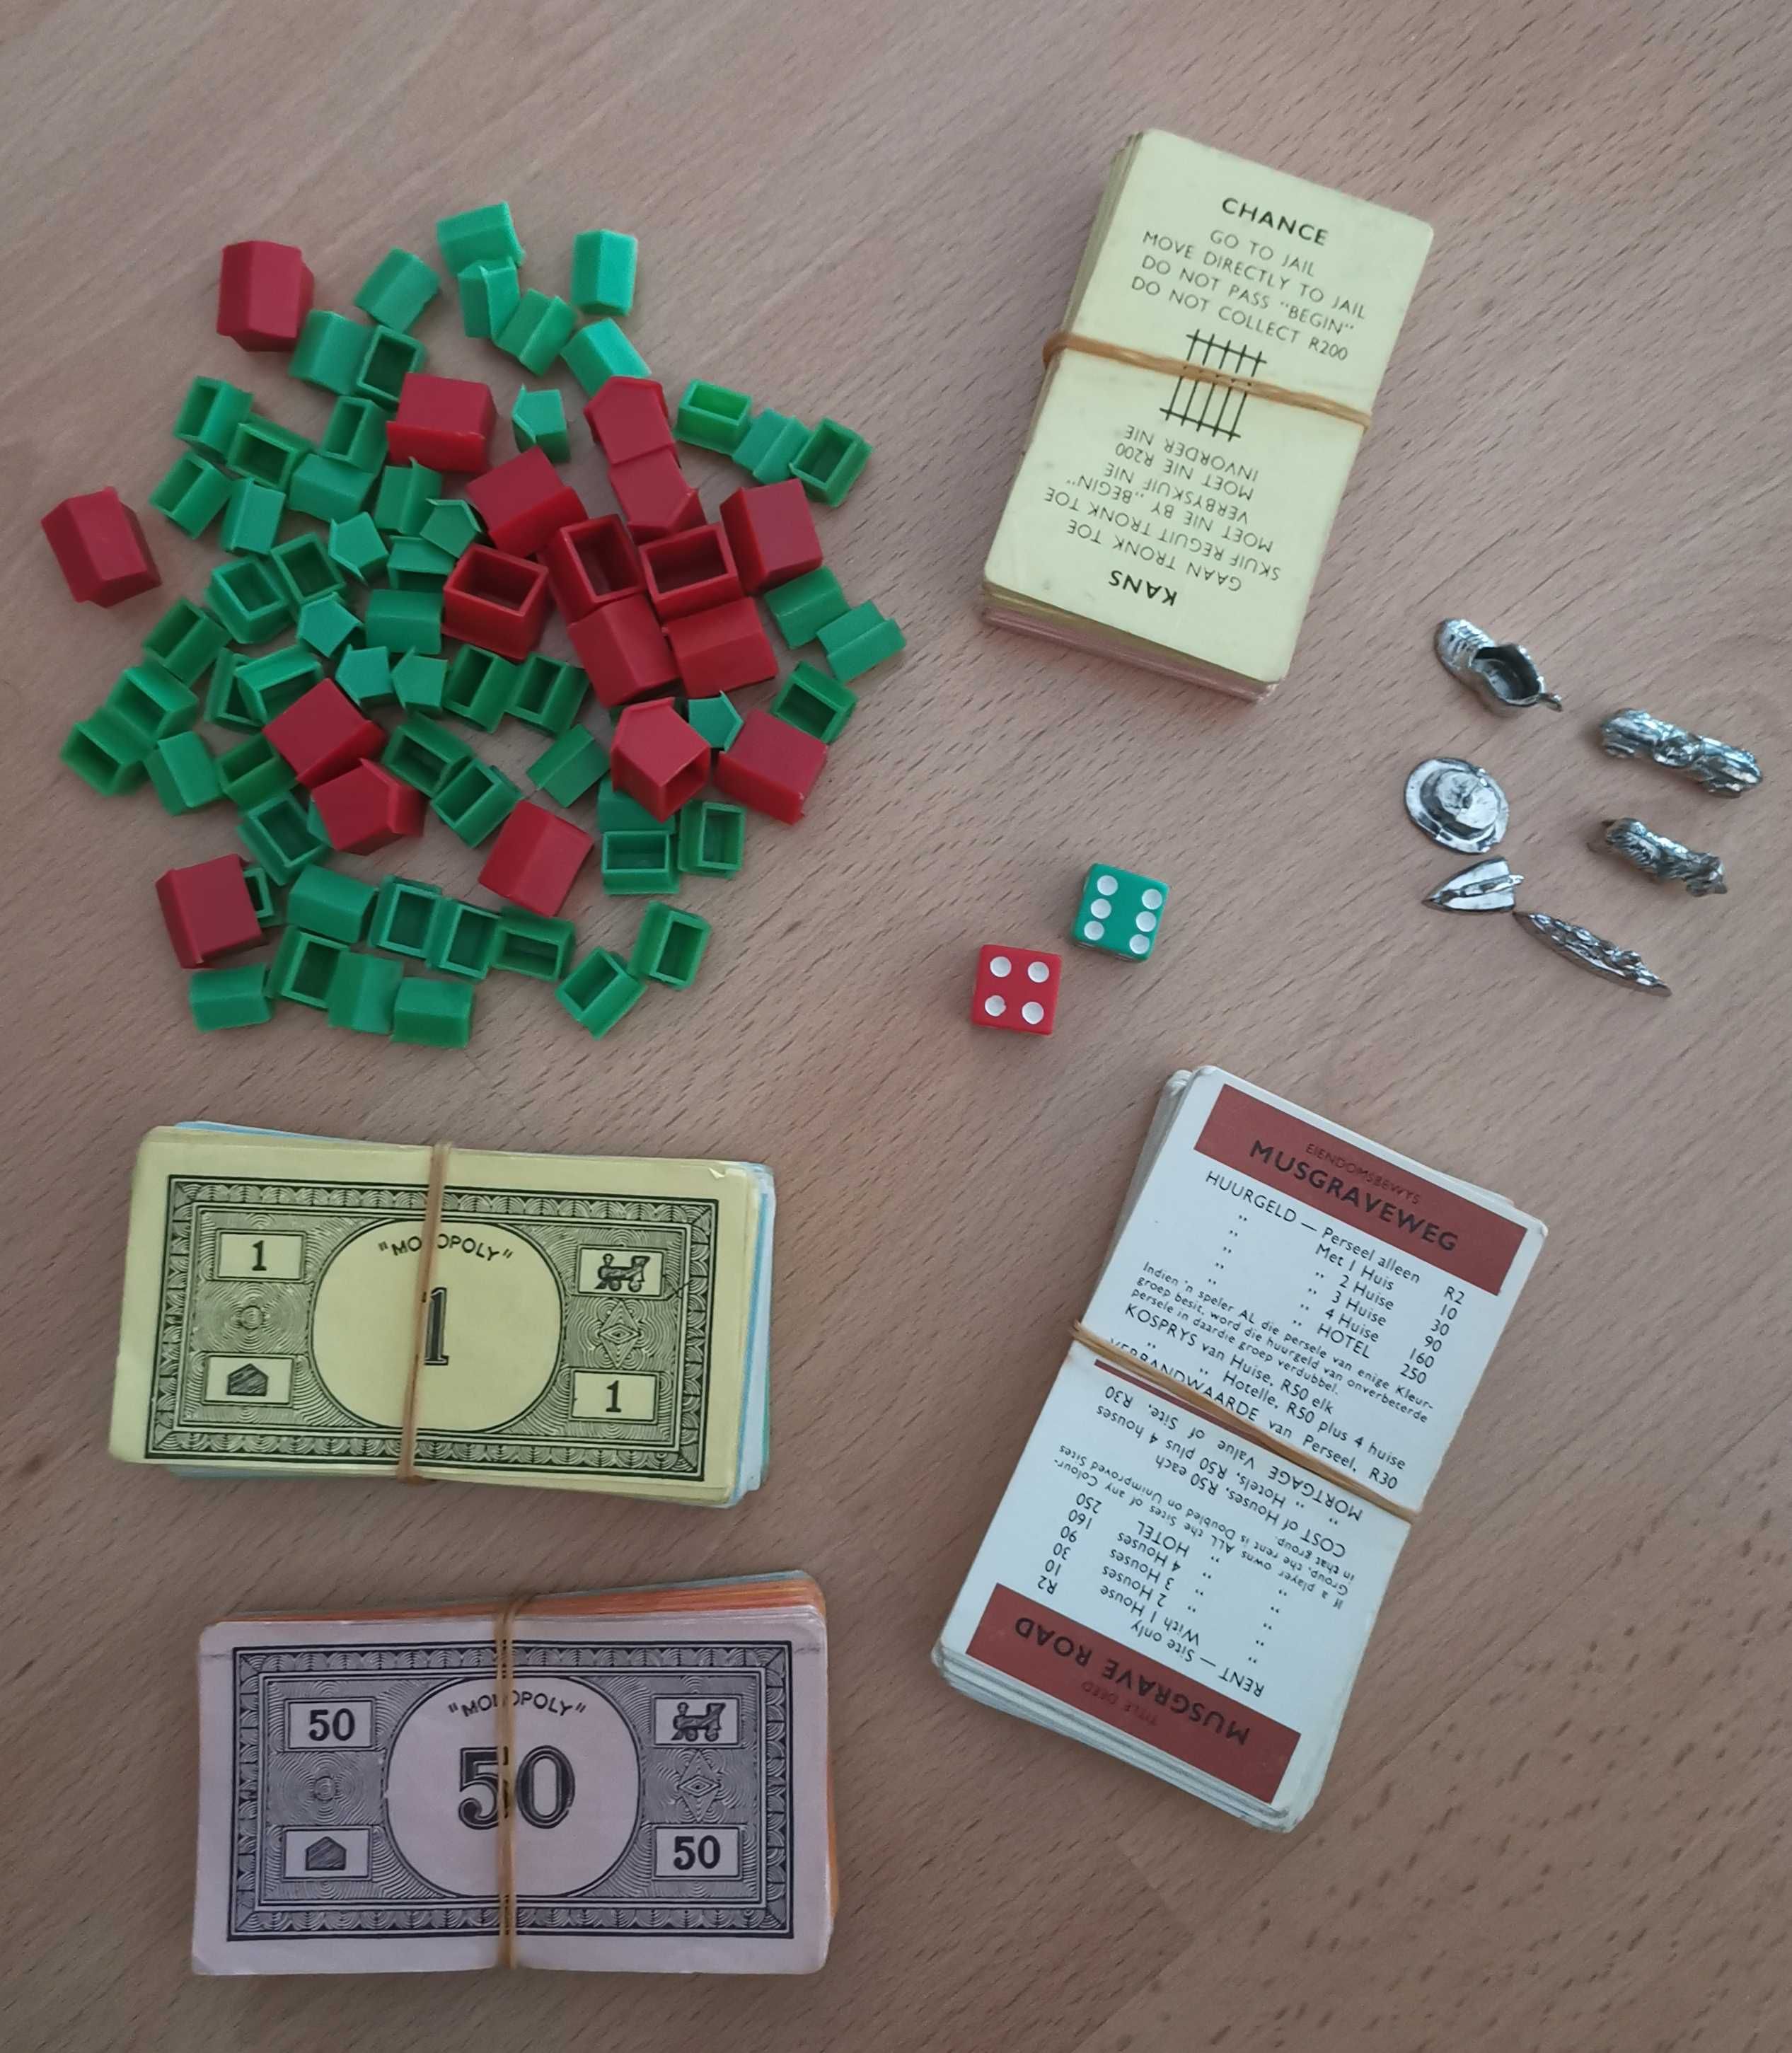 Monopoly da Áfica do Sul dos anos 70